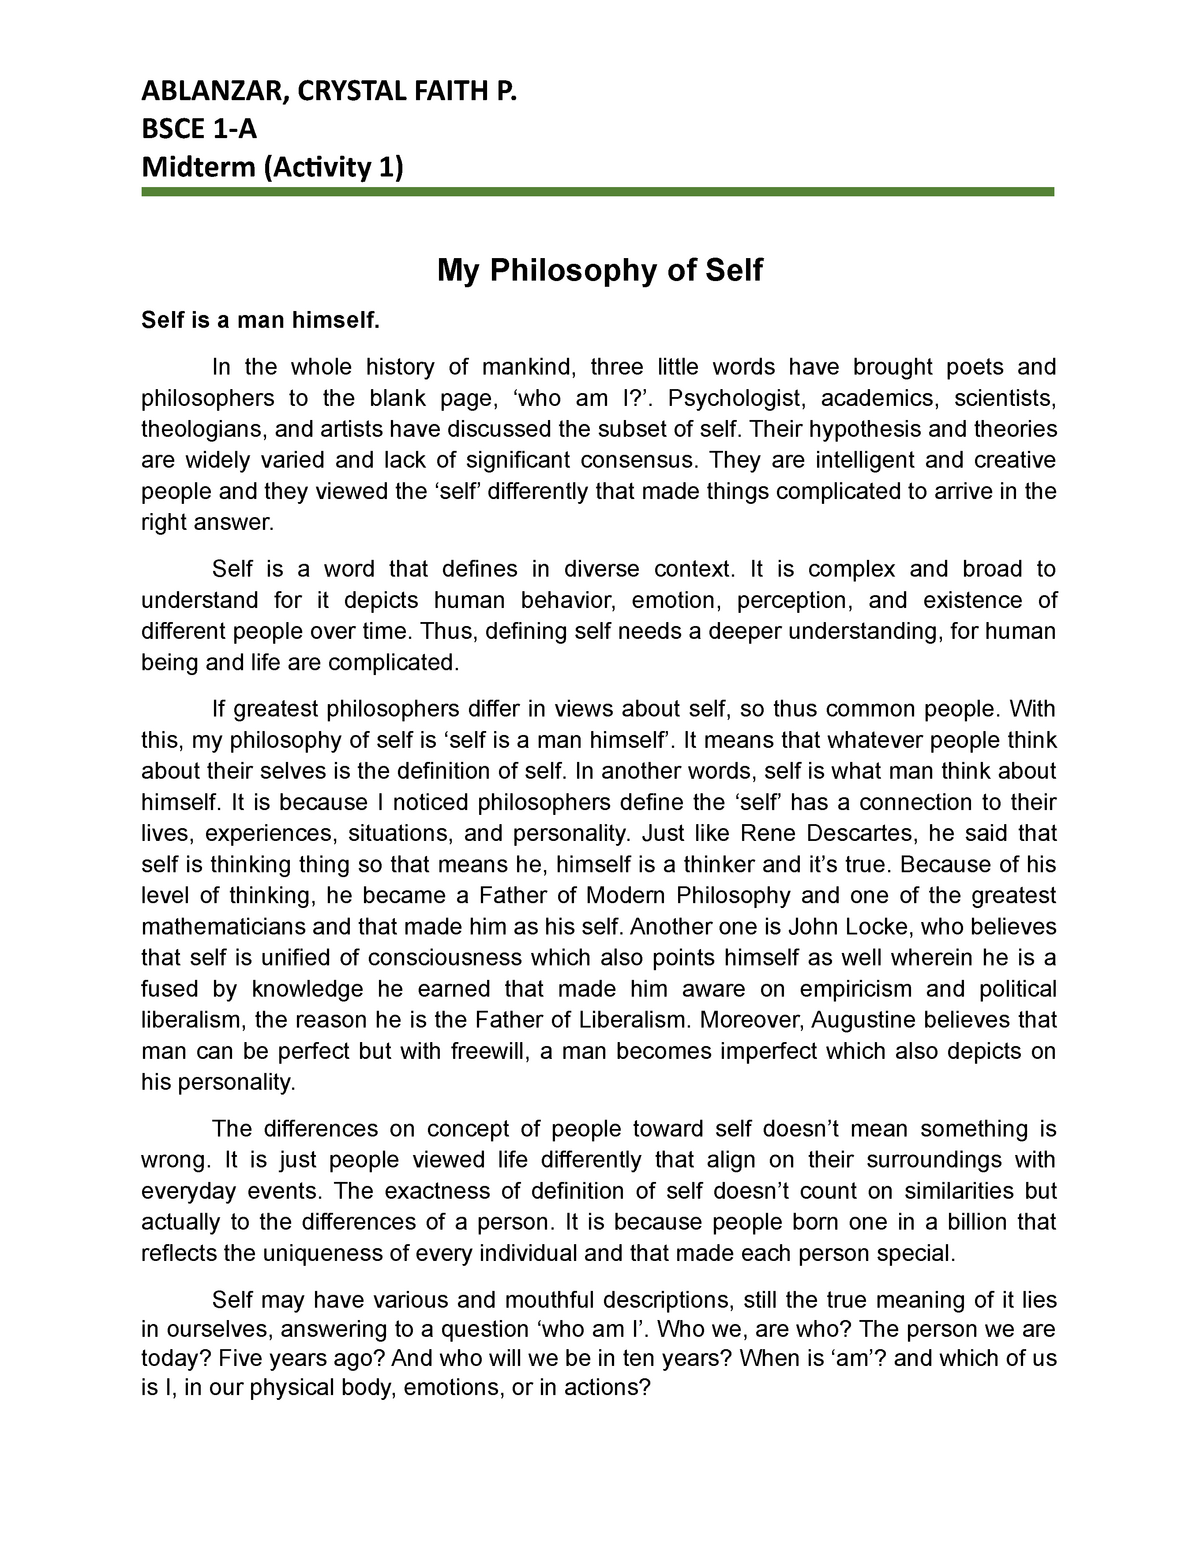 what is philosophy in your own understanding essay